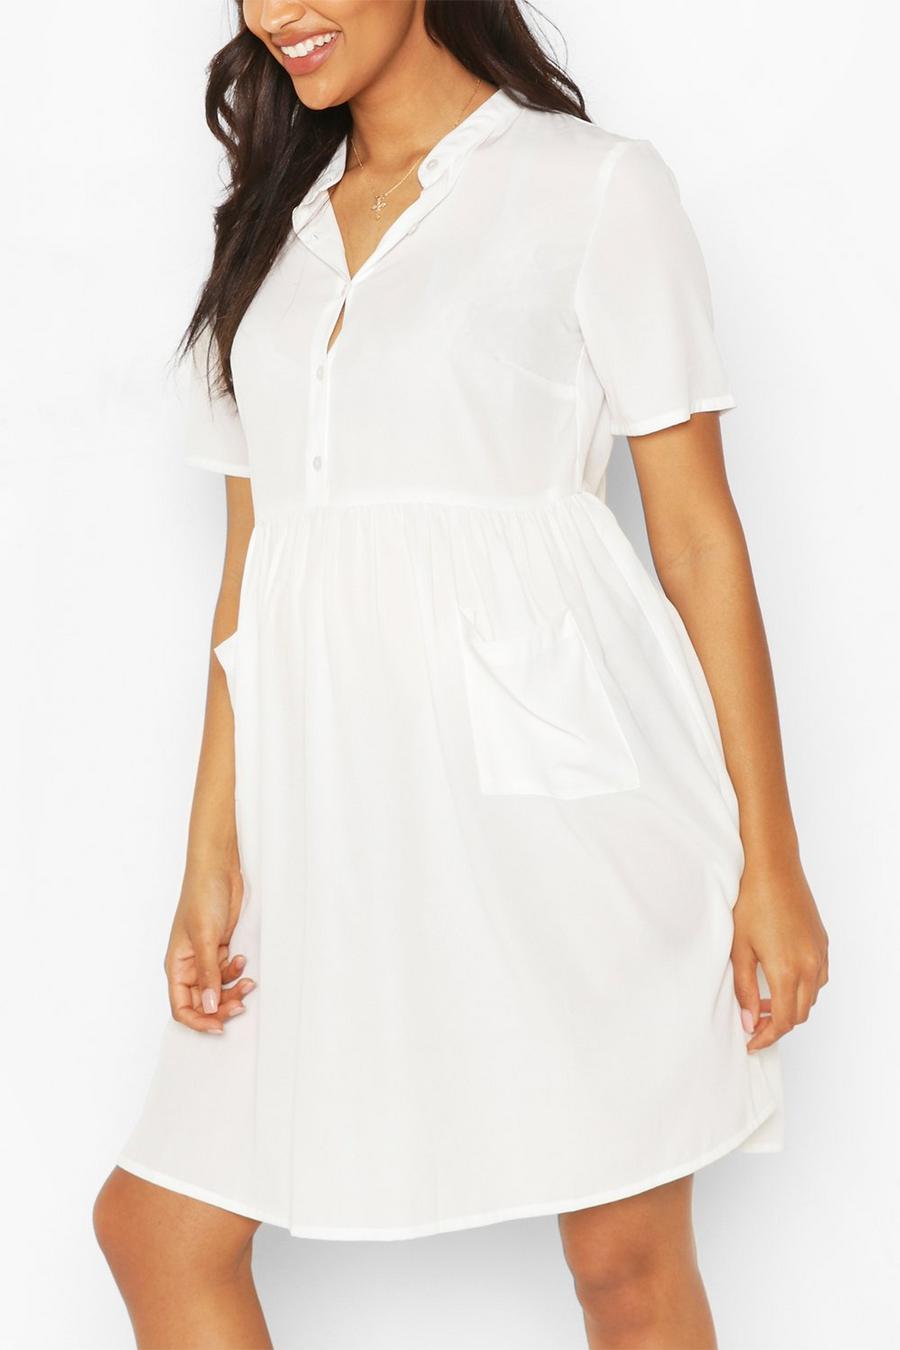 לבן bianco שמלת סמוק עם כיס וכפתורים בחזית בגדי היריון